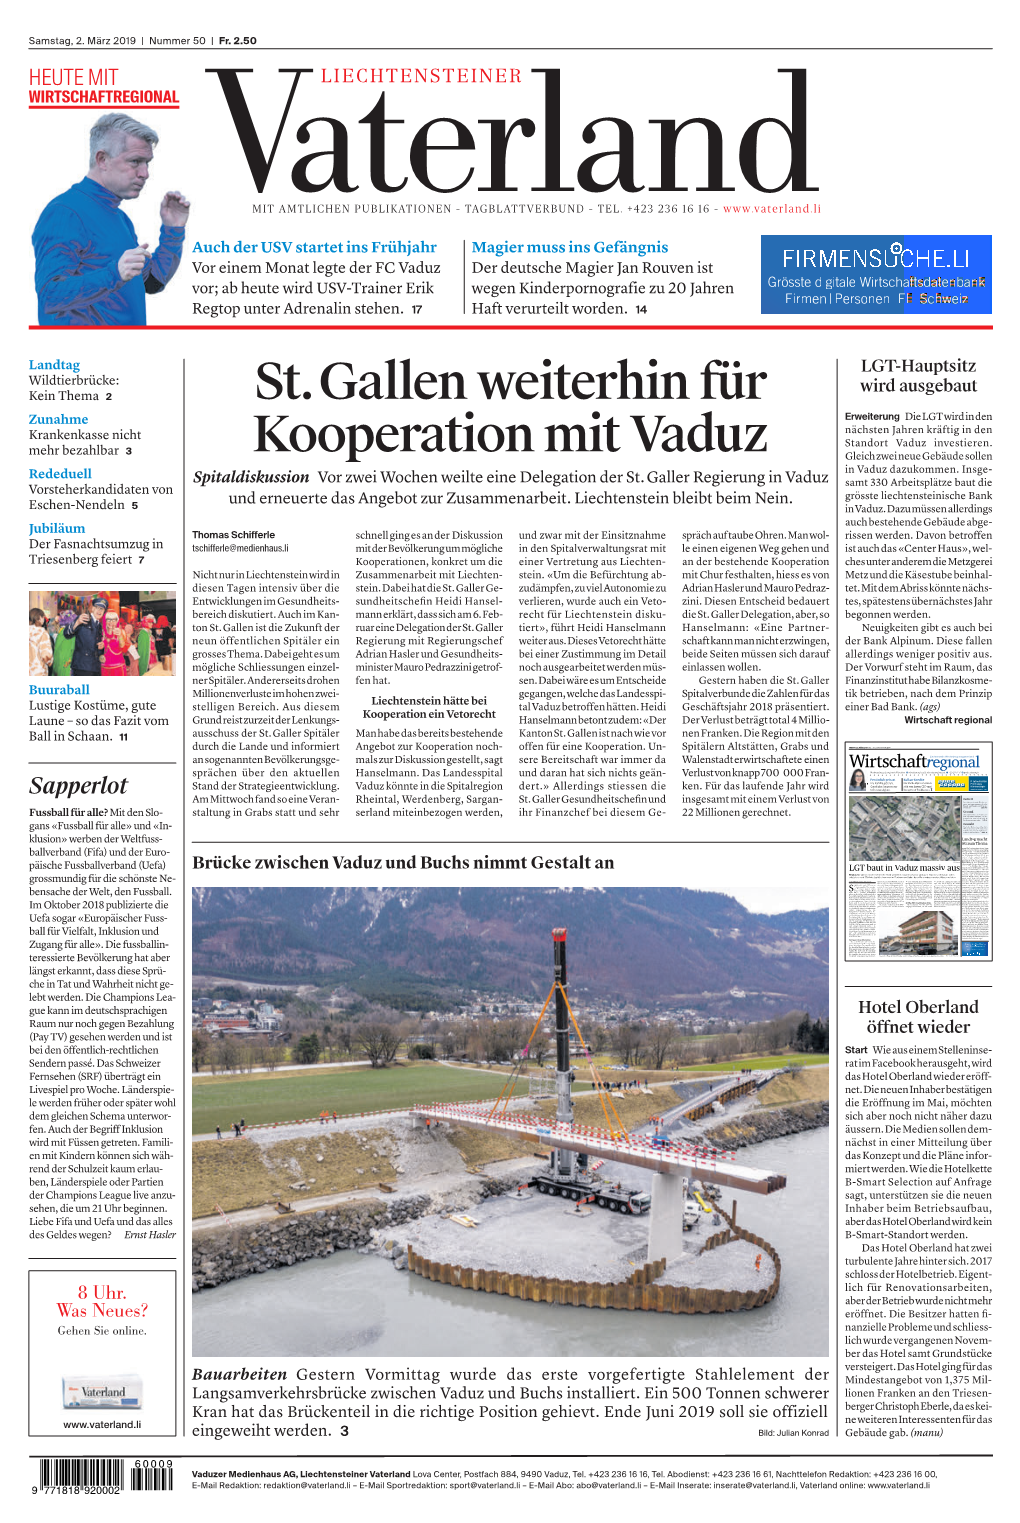 St.Gallen Weiterhin Für Kooperation Mit Vaduz